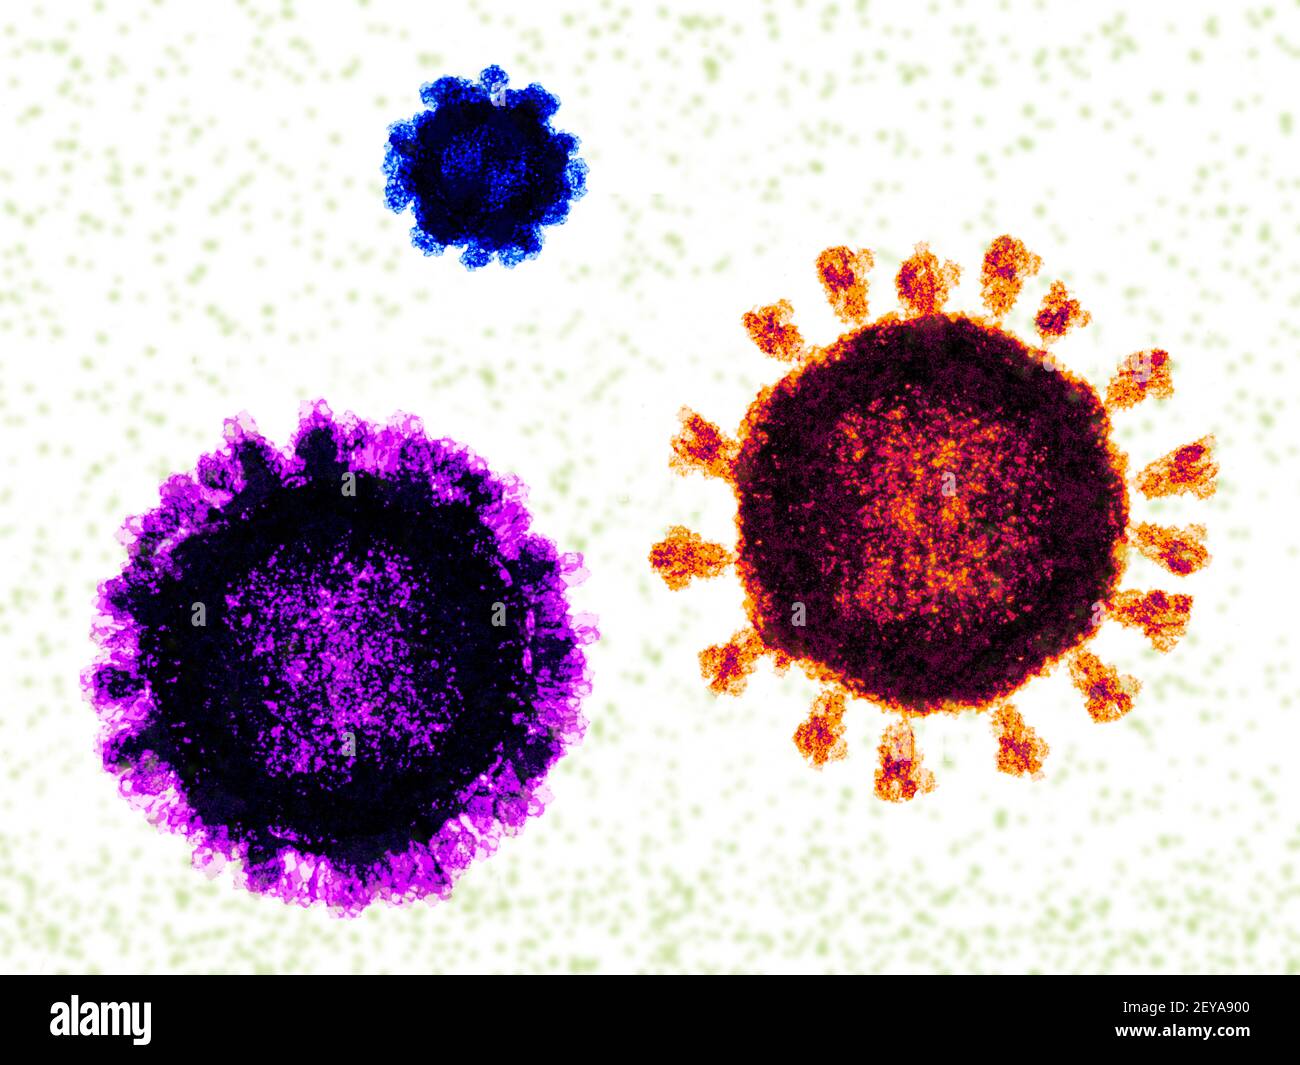 Norovirus, coronavirus and influenza virus,, illustration Stock Photo